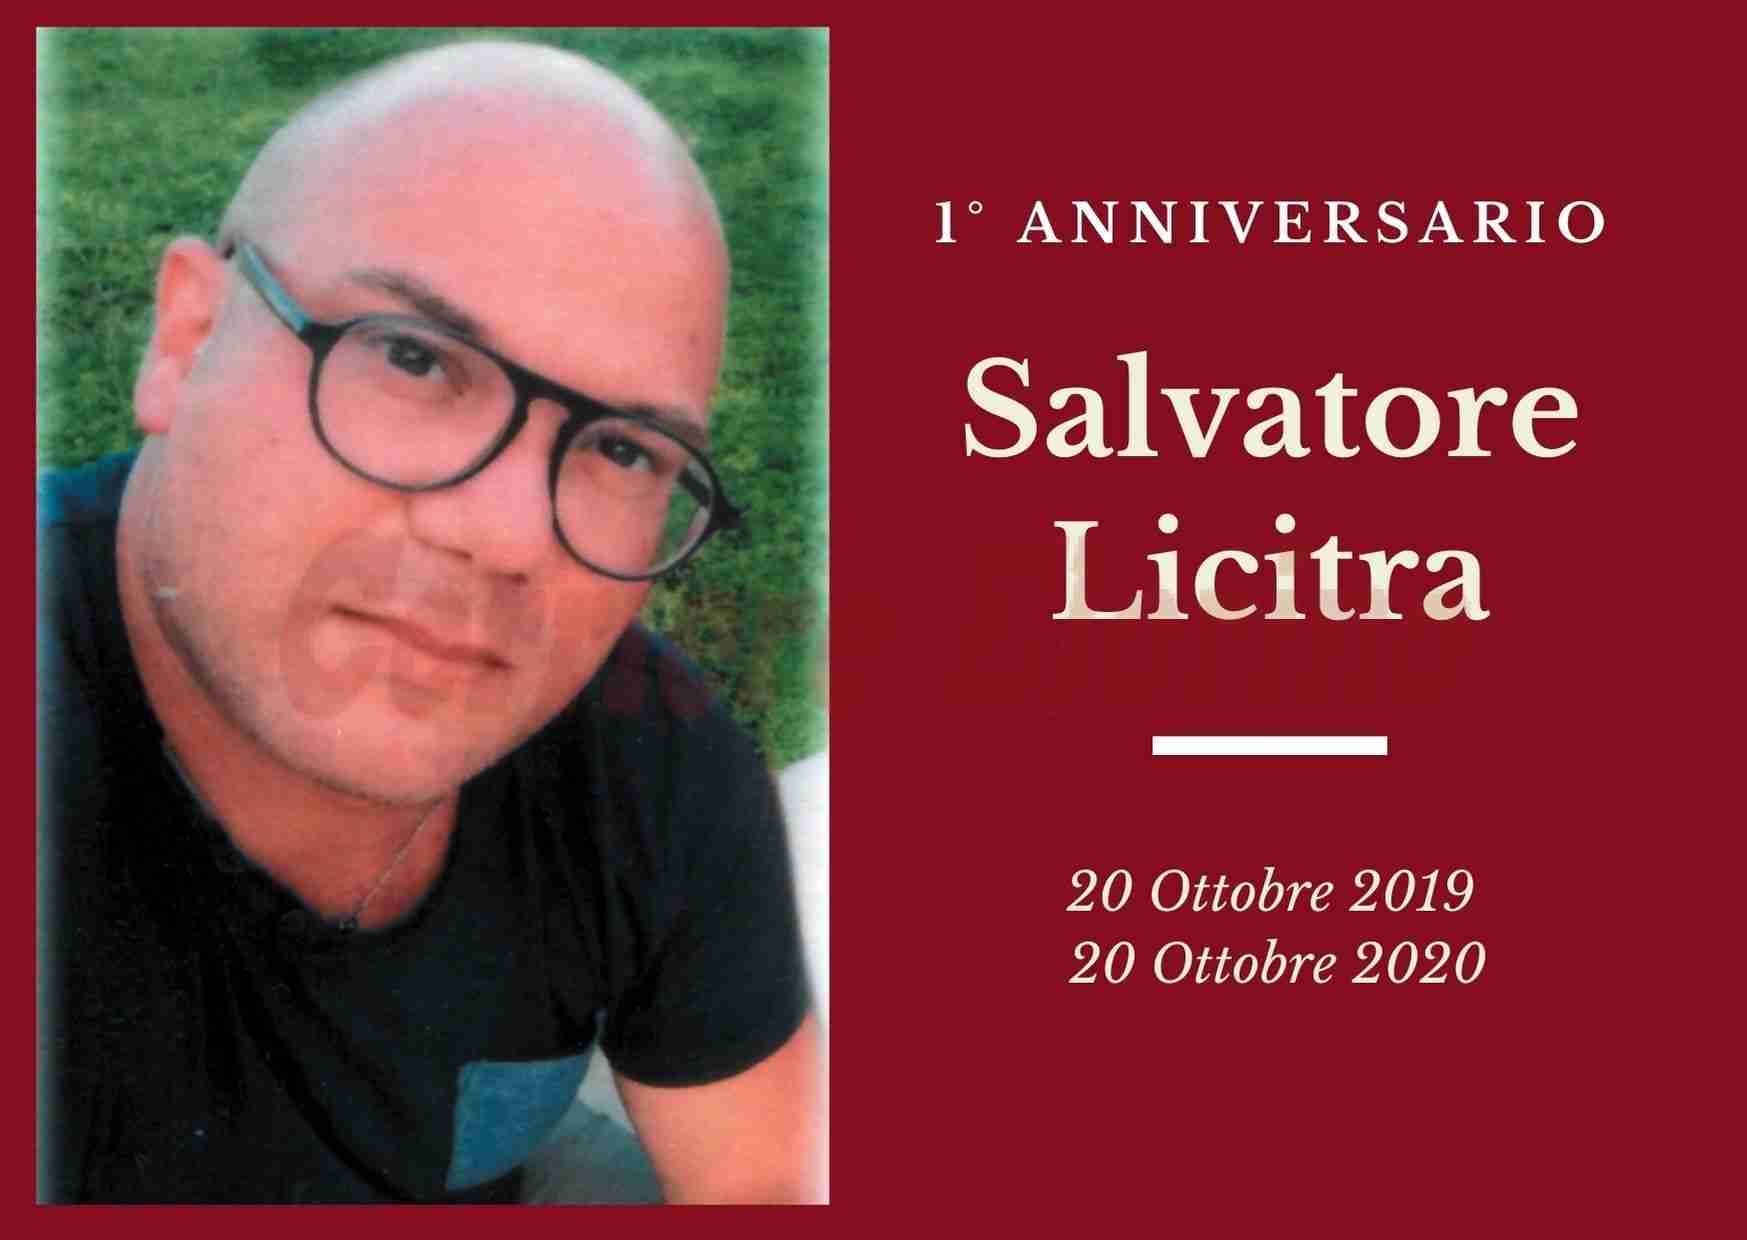 Necrologio: ricorre oggi il 1° anniversario dalla scomparsa del giovane Salvatore Licitra